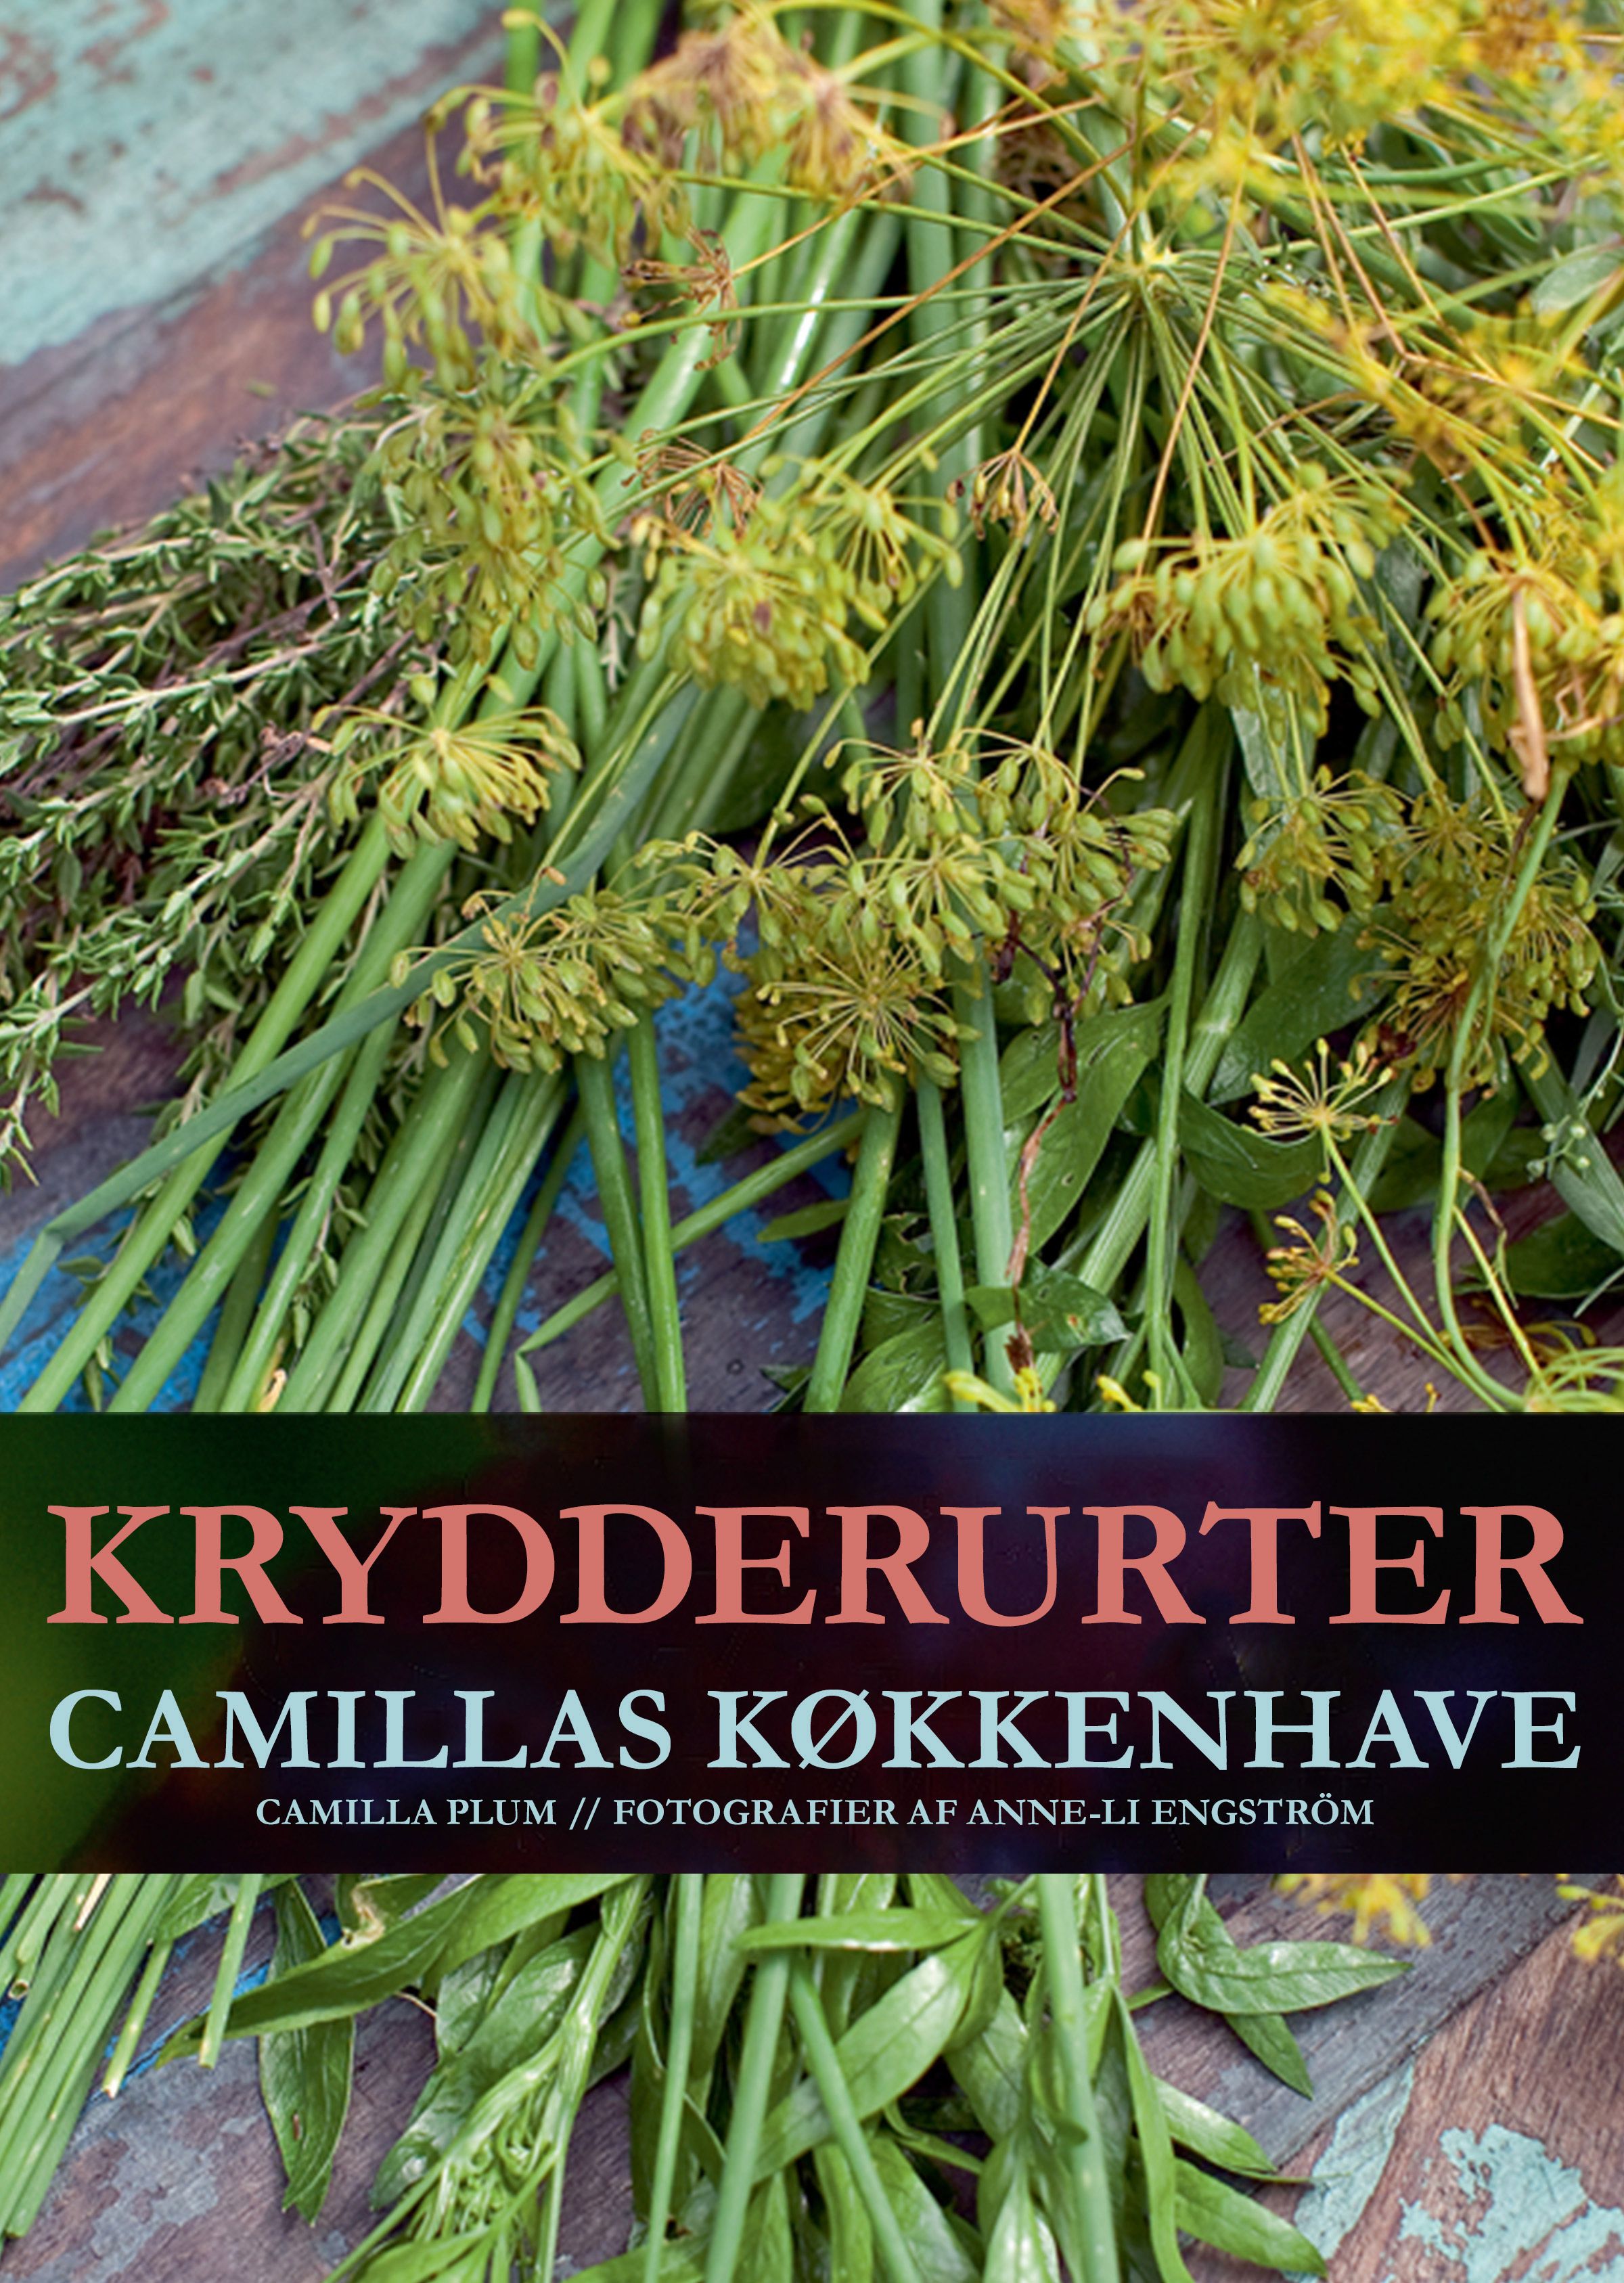 Krydderurter - Camillas køkkenhave, eBook by Camilla Plum